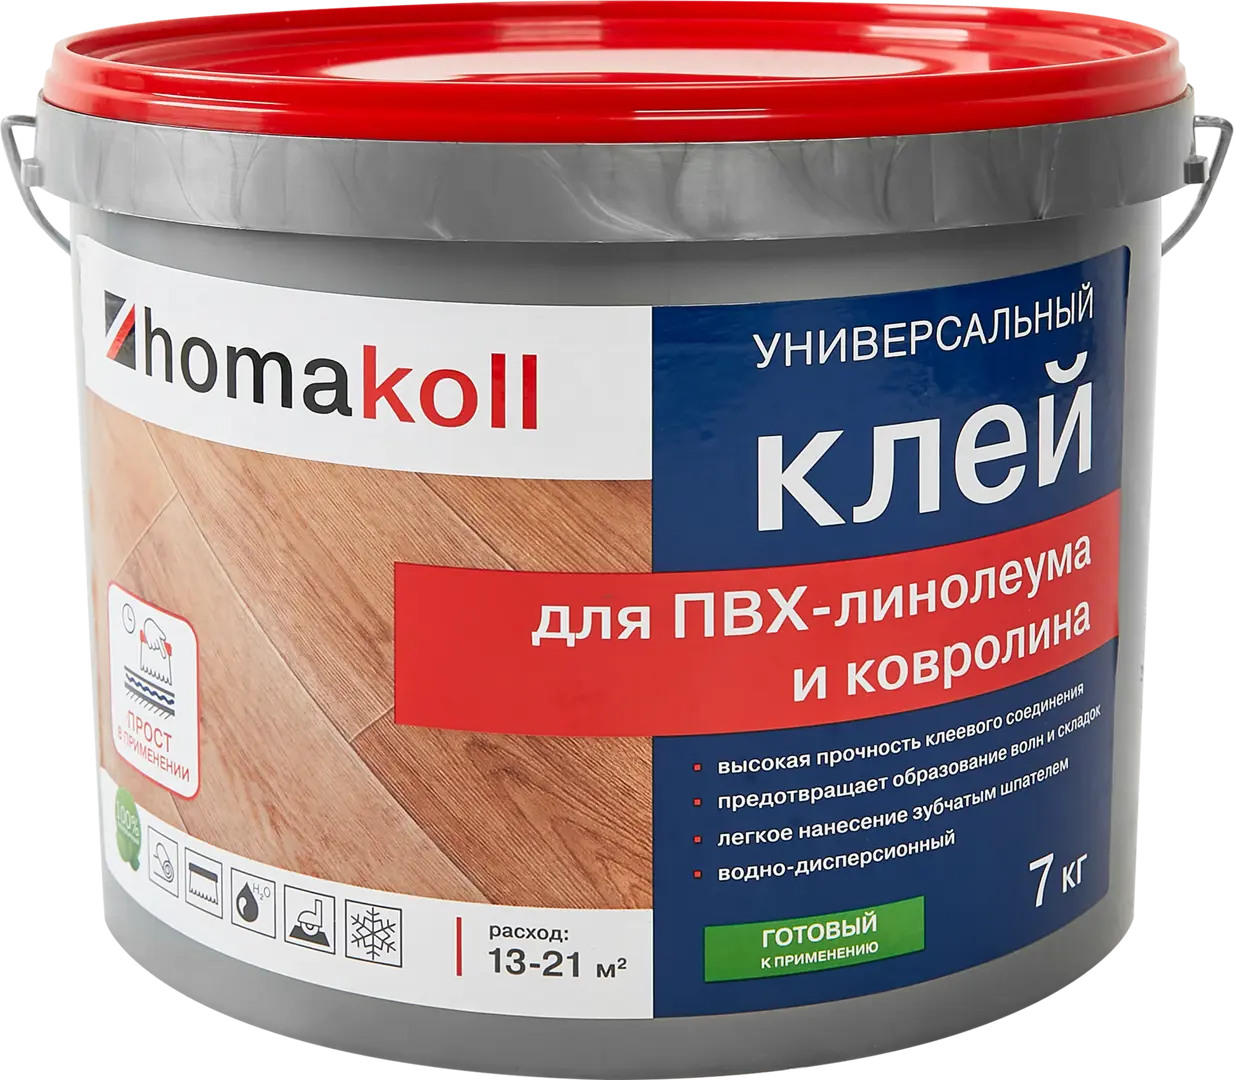 Клей универсальный для линолеума и ковролина Хомакол (Homakoll) 7 кг клей универсальный для линолеума и ковролина хомакол homakoll 1 3 кг